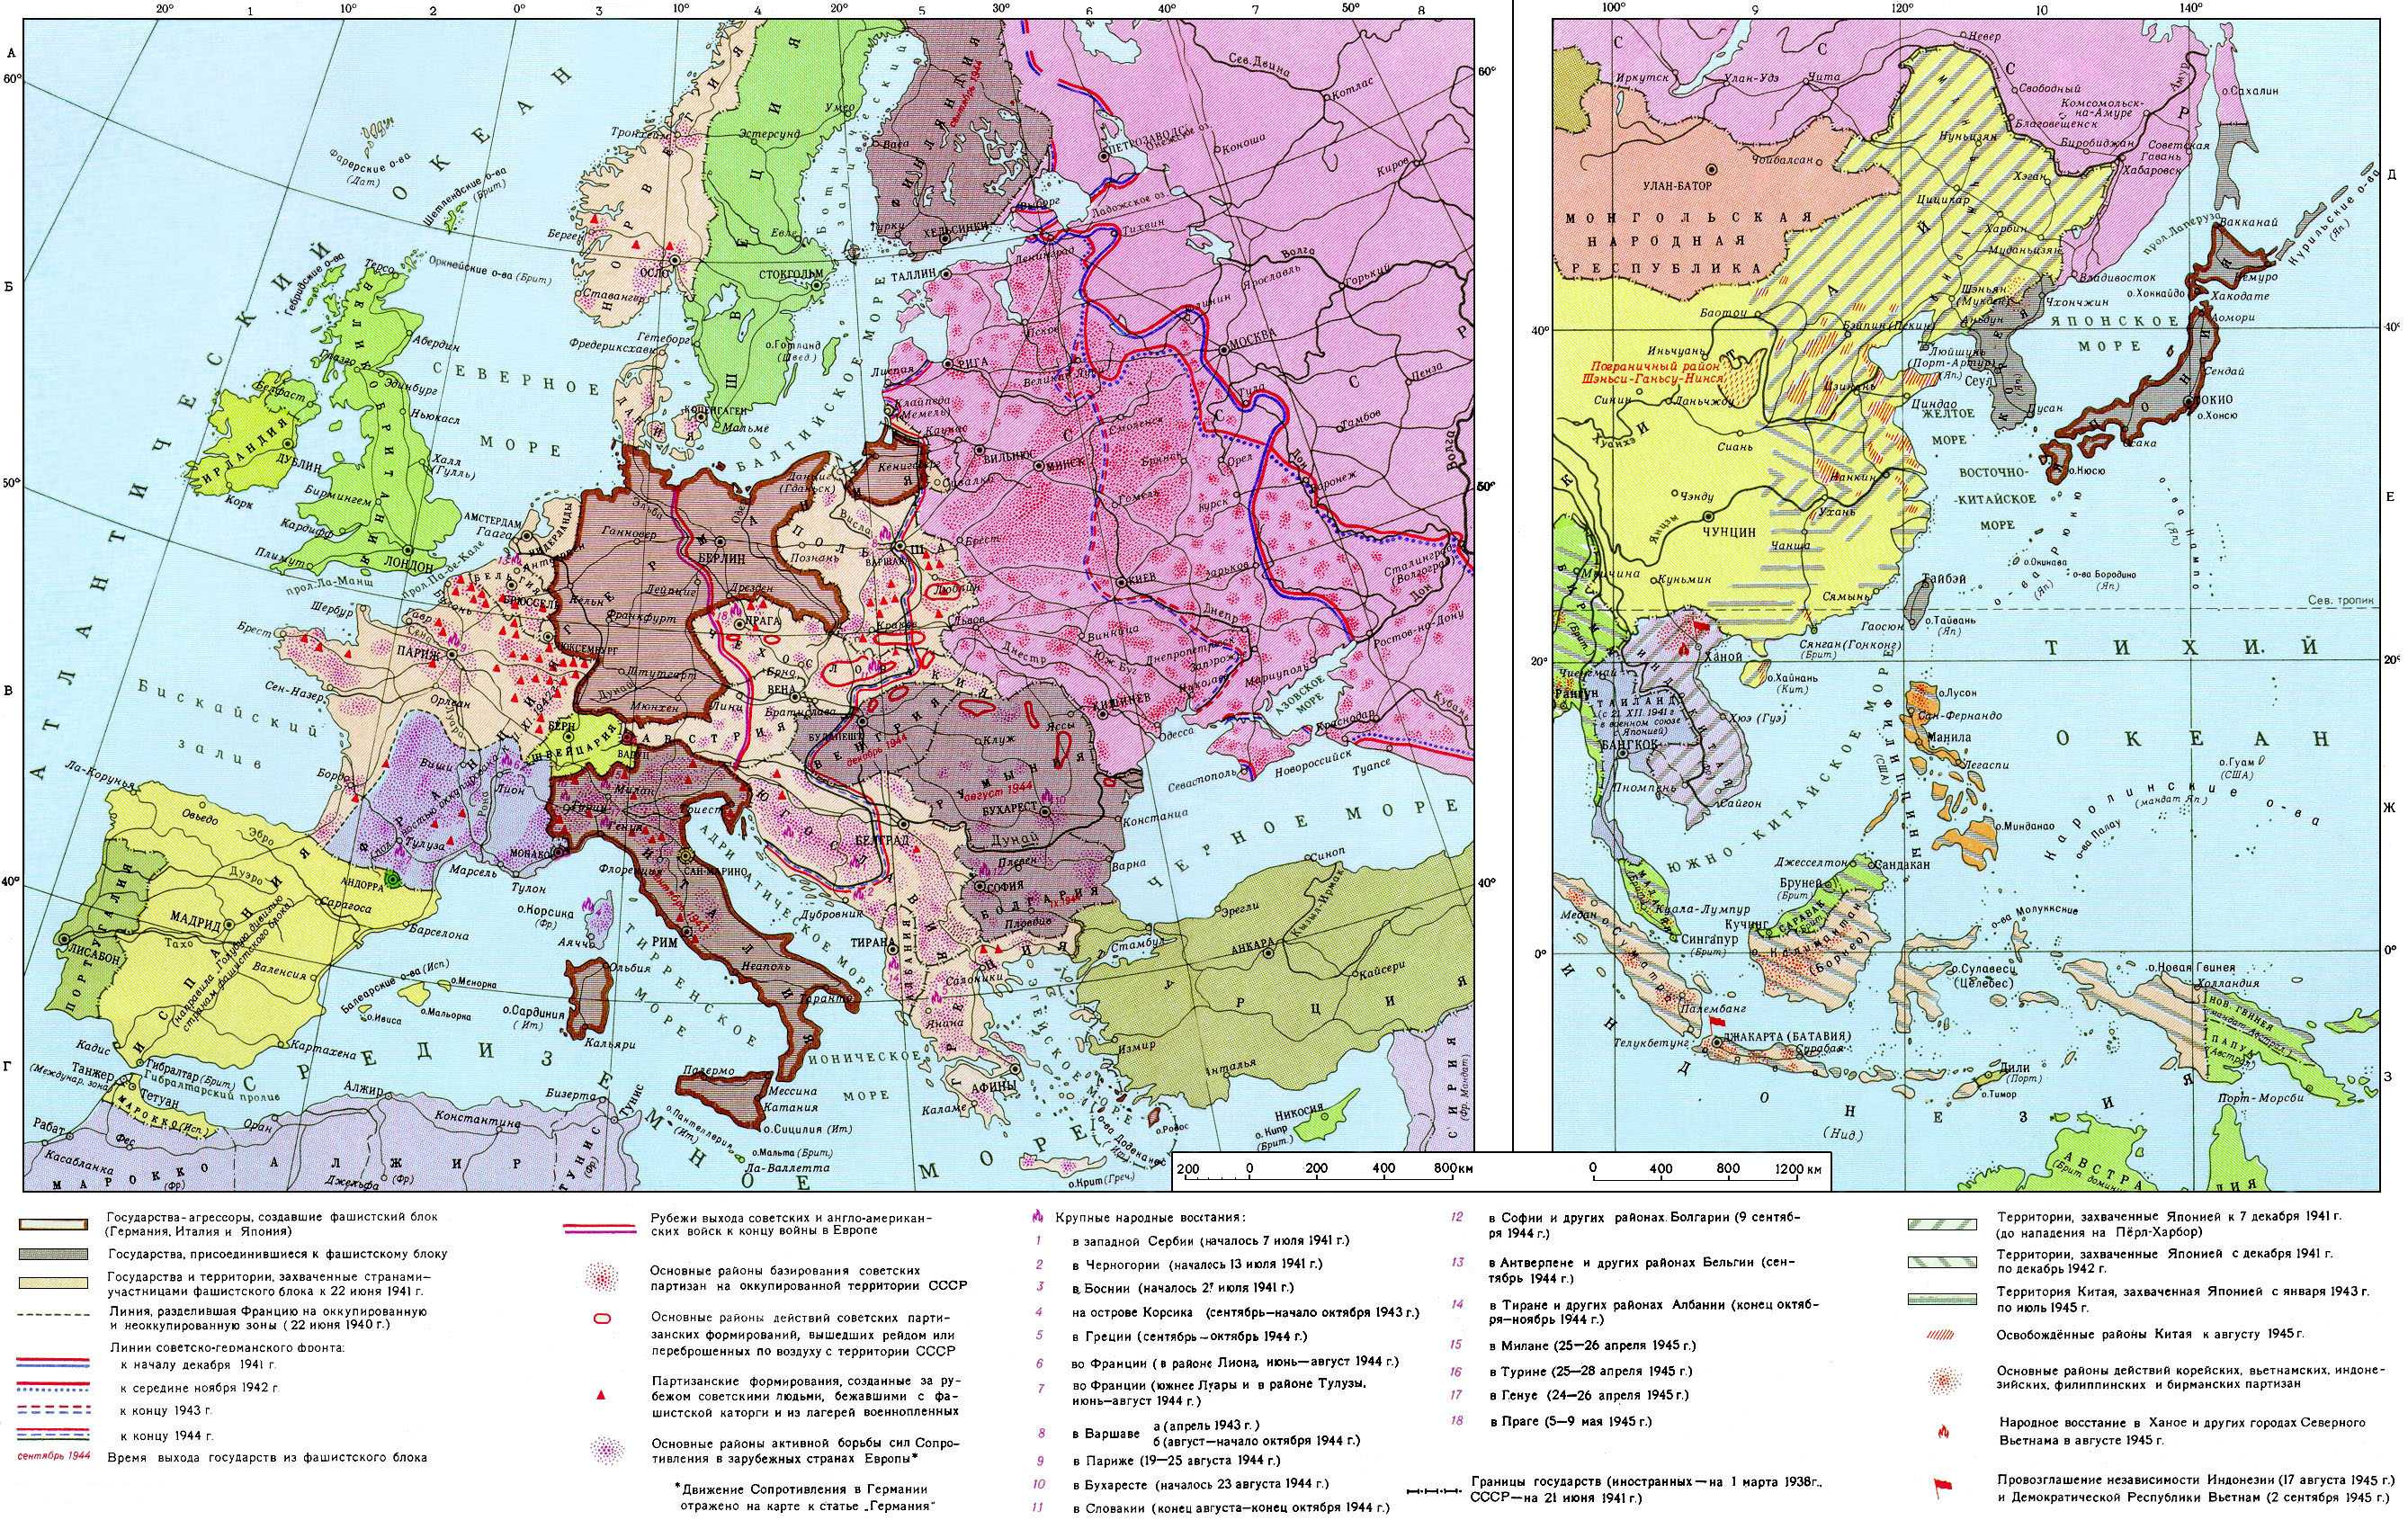 Территориальные изменения после второй мировой. Карта Европы после 2 мировой войны. Карта Европы перед 2 мировой войной. Карта Европы до начала второй мировой войны. Карта СССР до второй мировой войны.